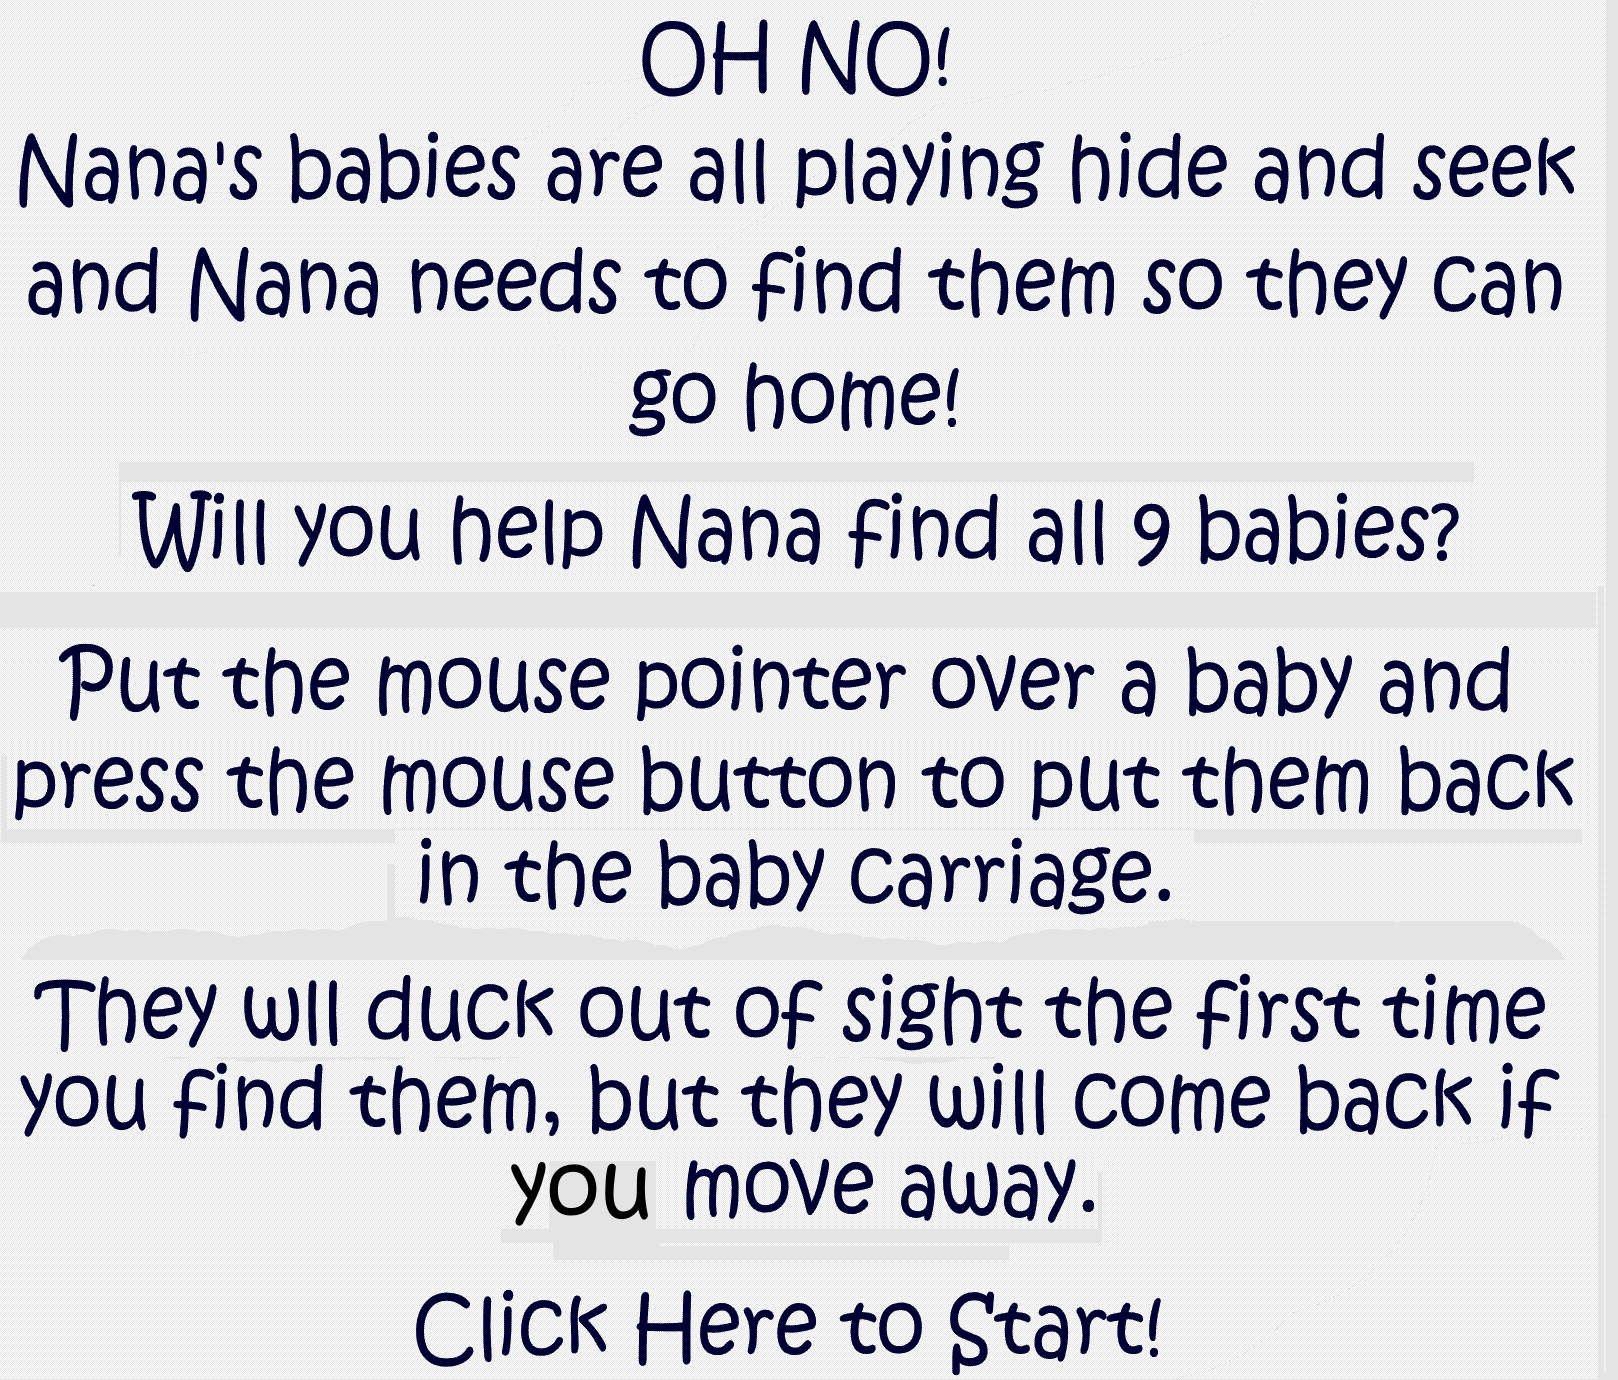 Help Nana